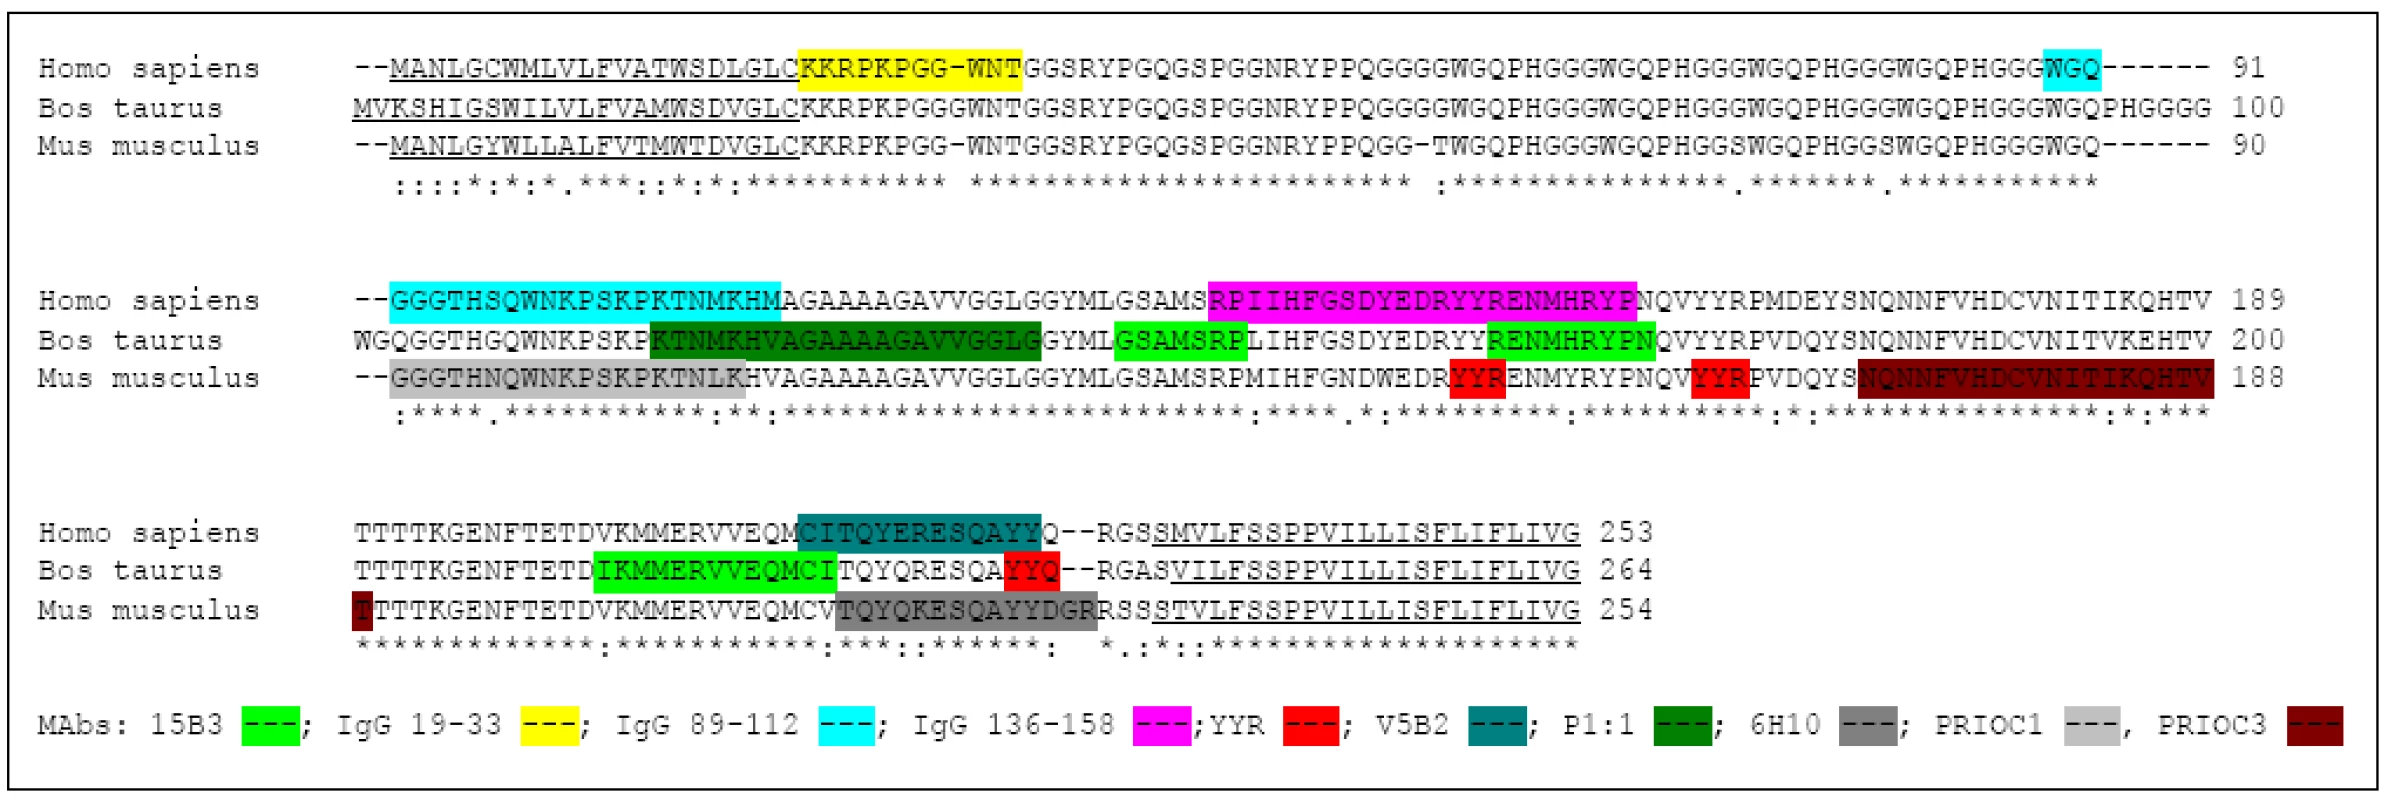 Pozice epitopů známých konformačně specifických protilátek proti prionovému proteinu. Srovnané aminokyselinové sekvence lidského (Homo sapiens, NP_001073592), hovězího (Bos taurus, DA23426) a myšího (Mus musculus, NP_035300) prionového proteinu s barevně zvýrazněnými epitopy konformačně specifických protilátek. Podtržené sekvence na začátku a konci molekuly představují signální peptidy, které jsou odštěpeny v průběhu postranslačních modifikací. Primární struktura prionového proteinu je vysoce konzervovaná, hvězdička ukazuje úplnou shodu mezi jednotlivými druhy, tečka, dvojtečka a mezera pak upozorňuje na rozdíly mezi živočišnými druhy. Většina známých epitopů konformačních protilátek se nachází na C koncové polovině molekuly prionového proteinu. Konformační protilátky obvykle nejsou druhově specifické a rozeznávají PrP&lt;sup&gt;TSE&lt;/sup&gt; více živočišných druhů (tab. 2).